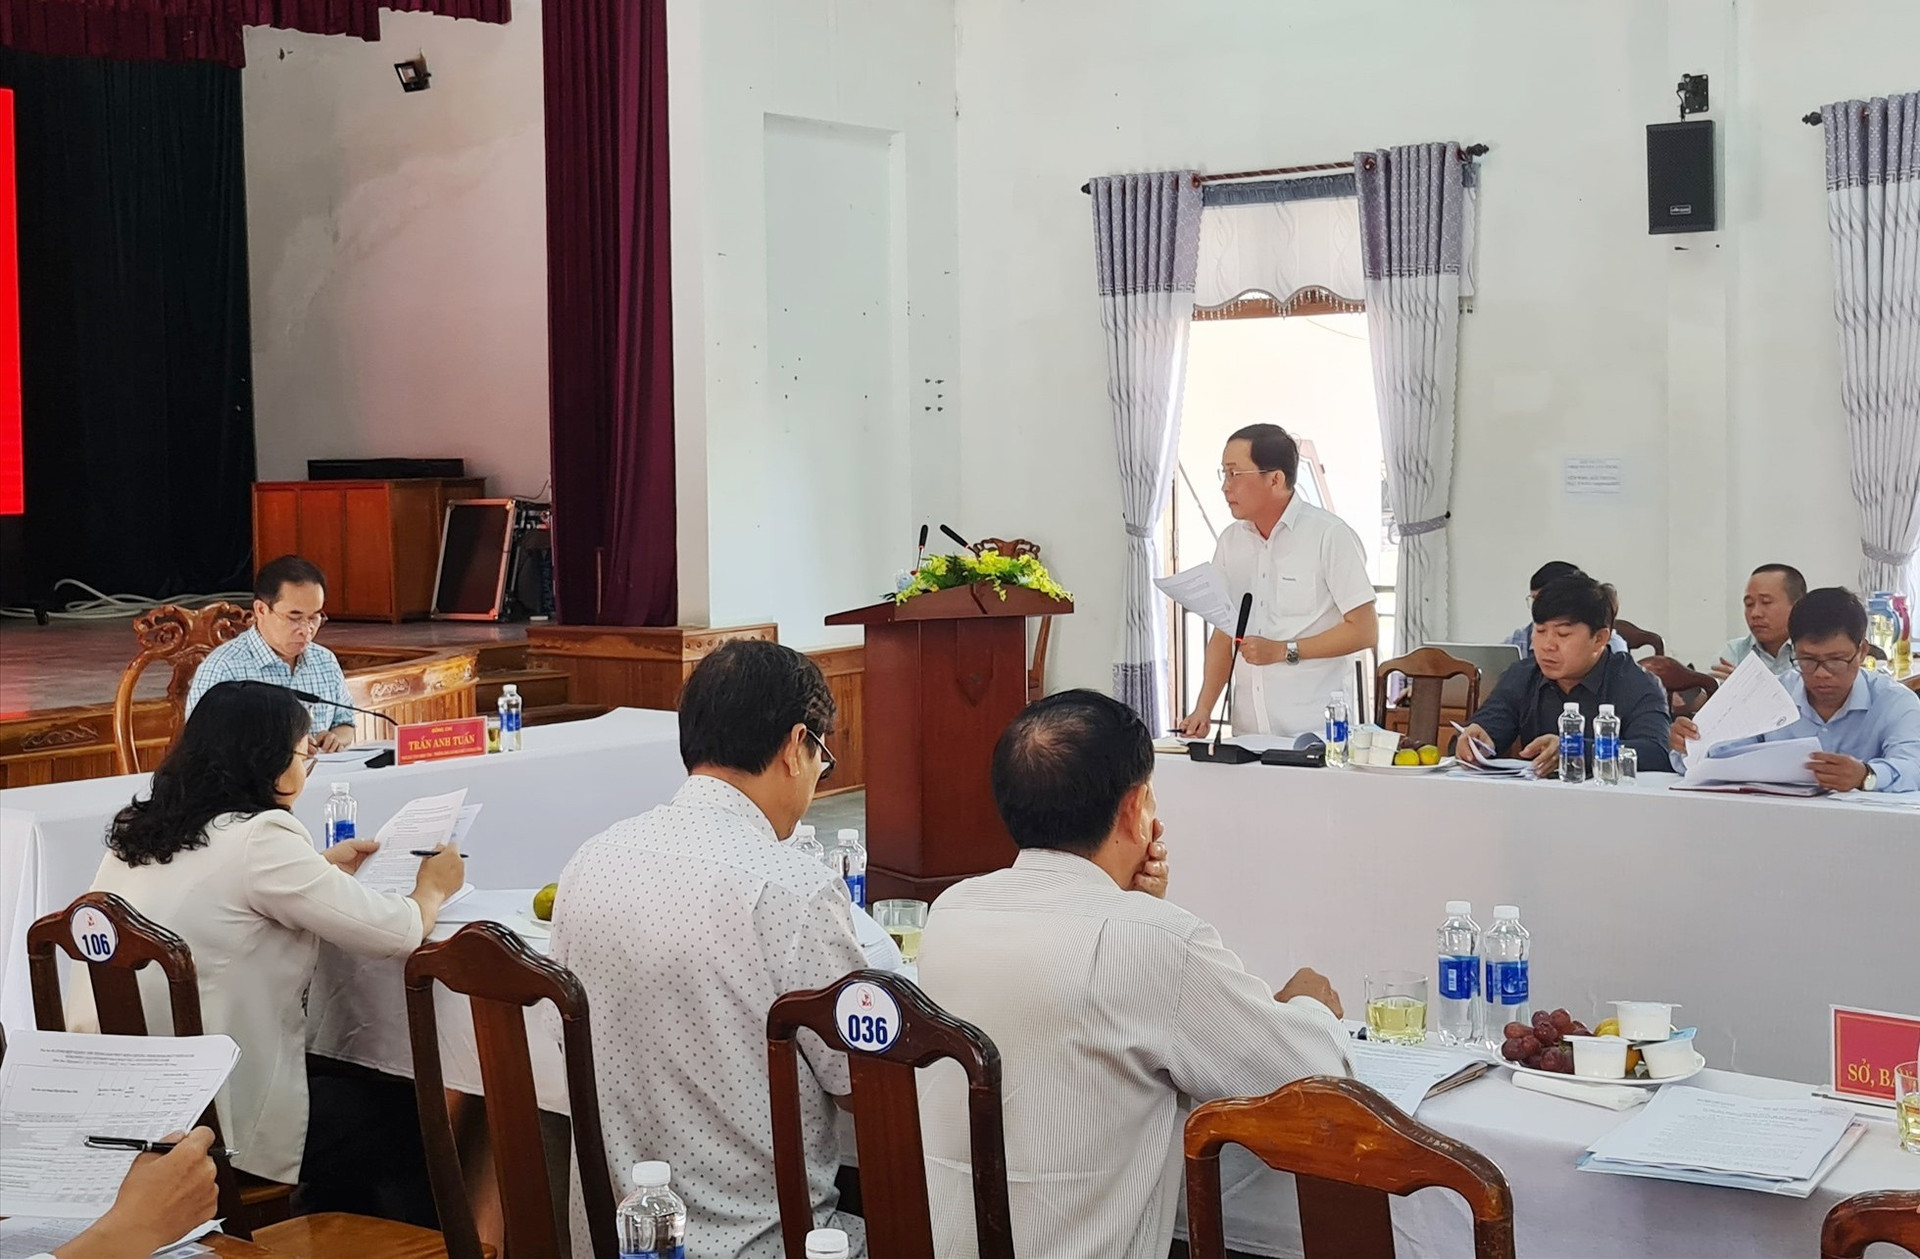 UBND huyện Tây Giang báo cáo tiến độ thực hiện các chương trình. Ảnh: D.L